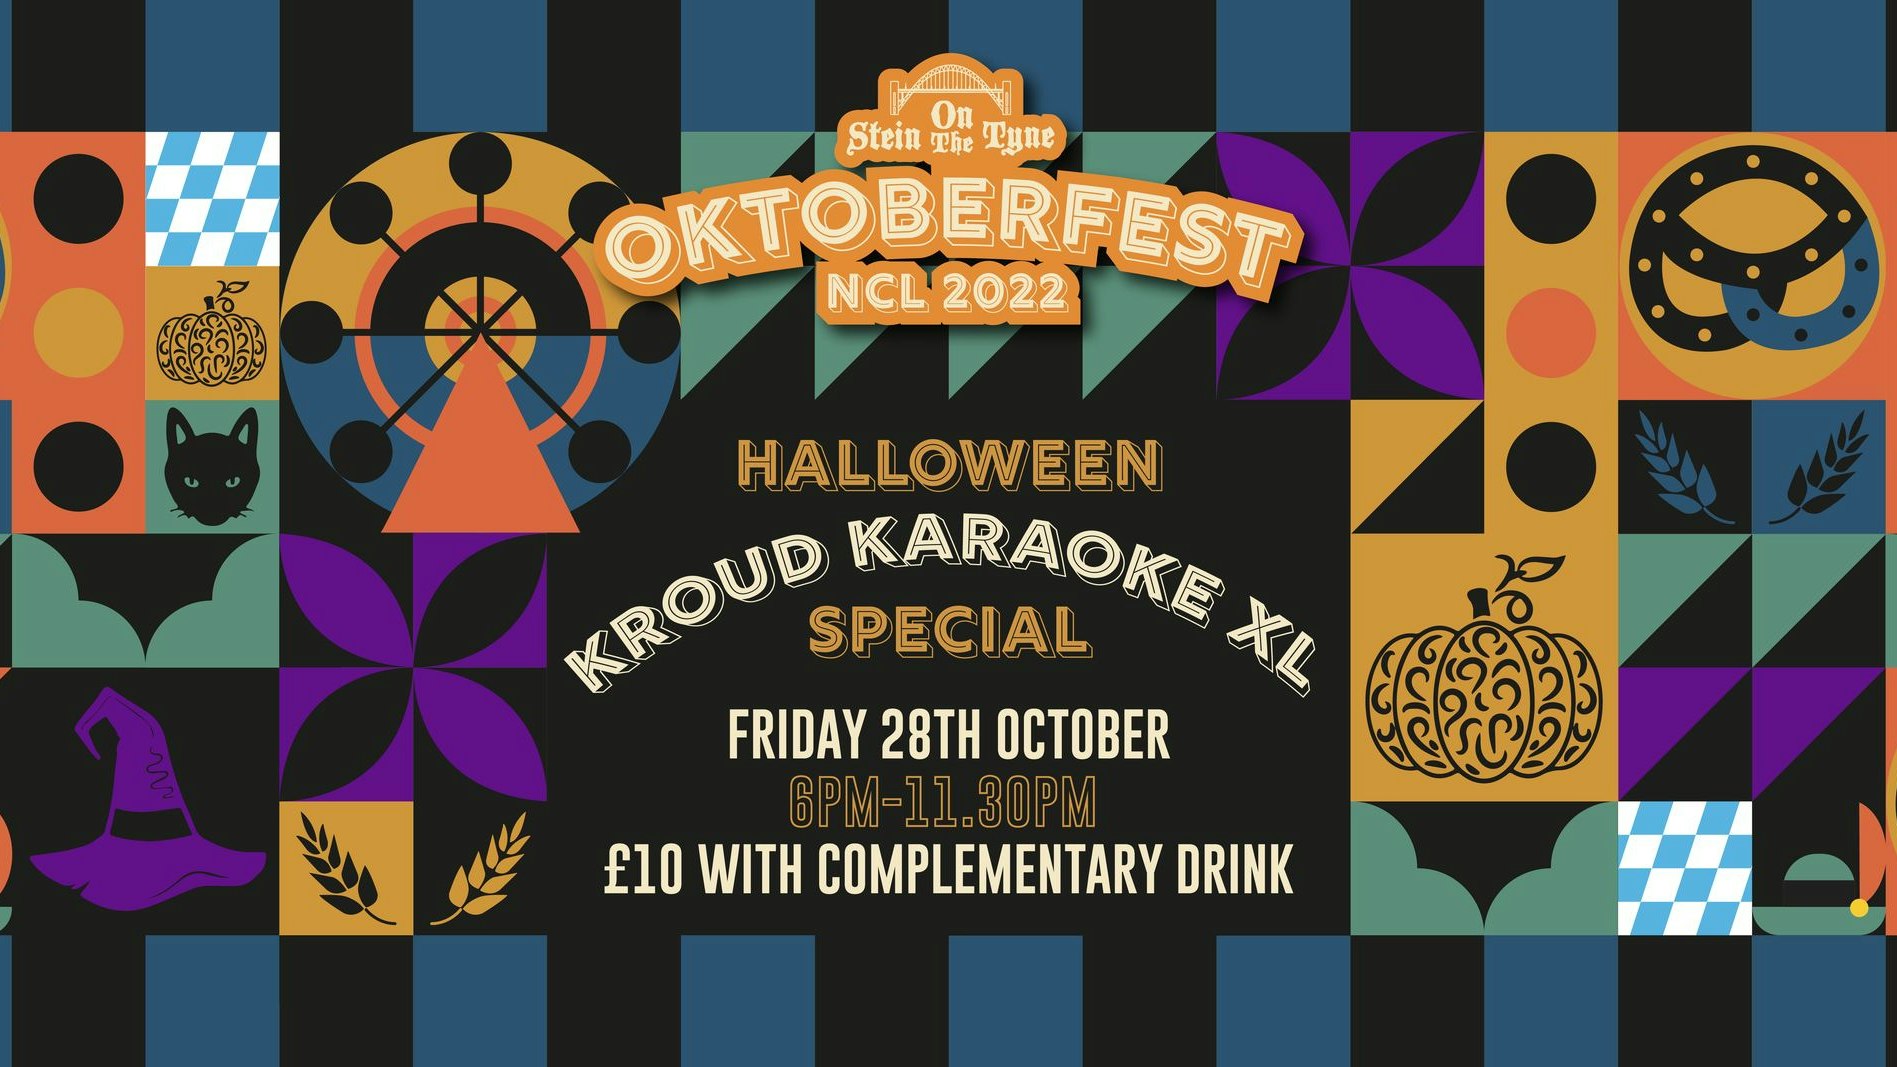 Kroud Karaoke XL – Halloween Special at Oktoberfest Newcastle